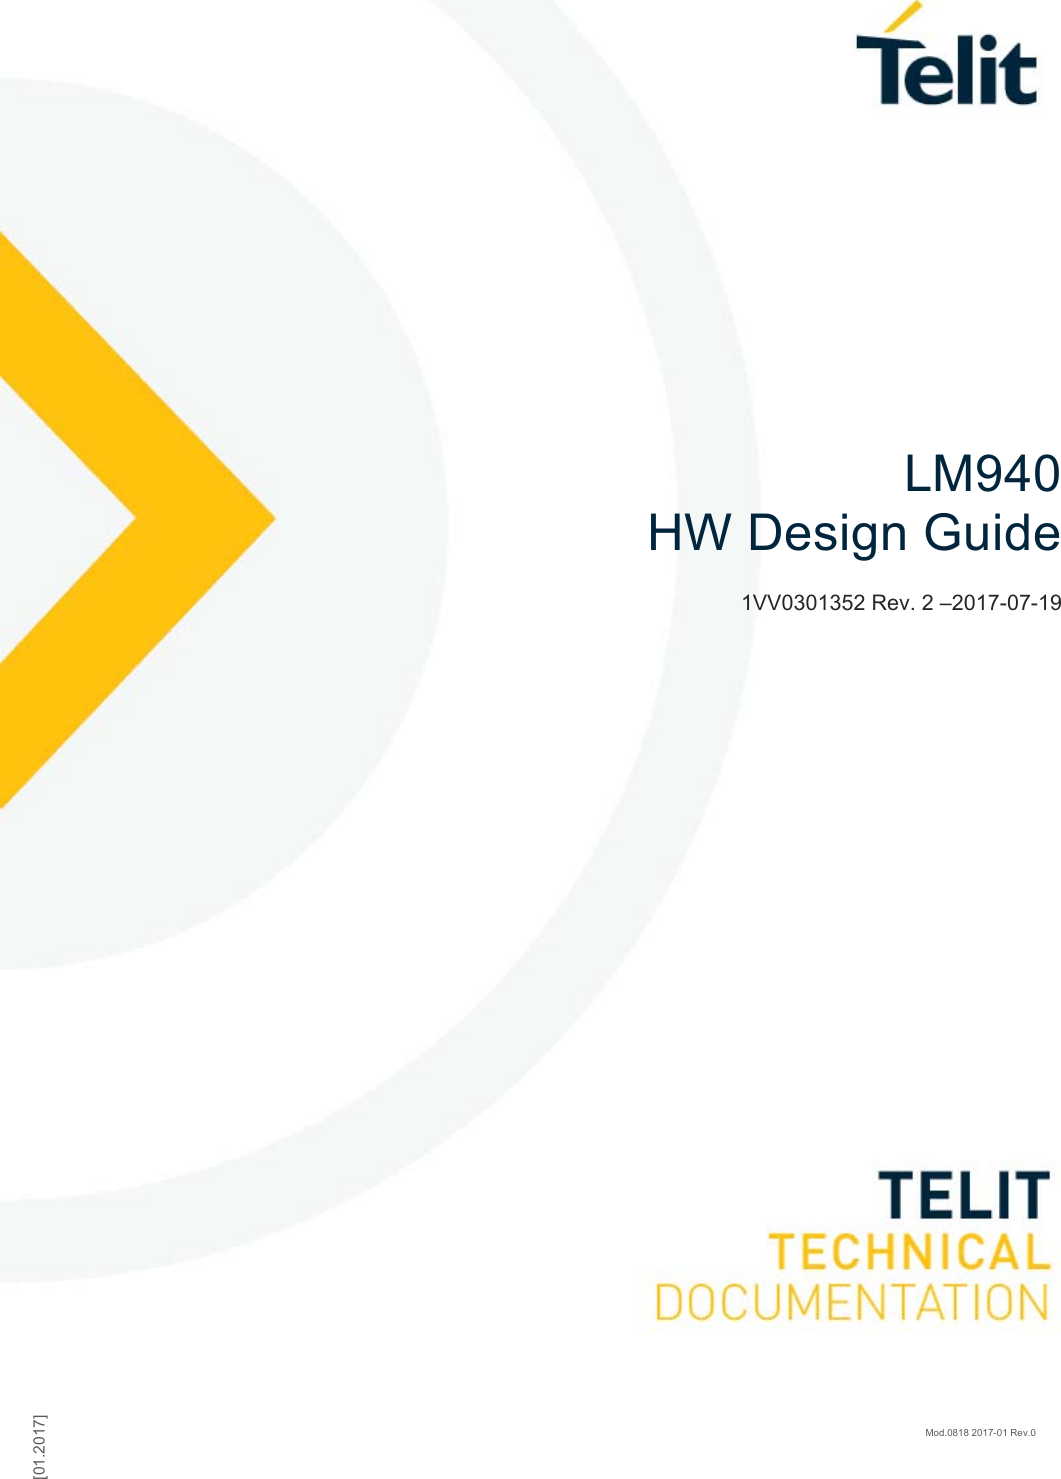    [01.2017] Mod.0818 2017-01 Rev.0            LM940  HW Design Guide 1VV0301352 Rev. 2 –2017-07-19    